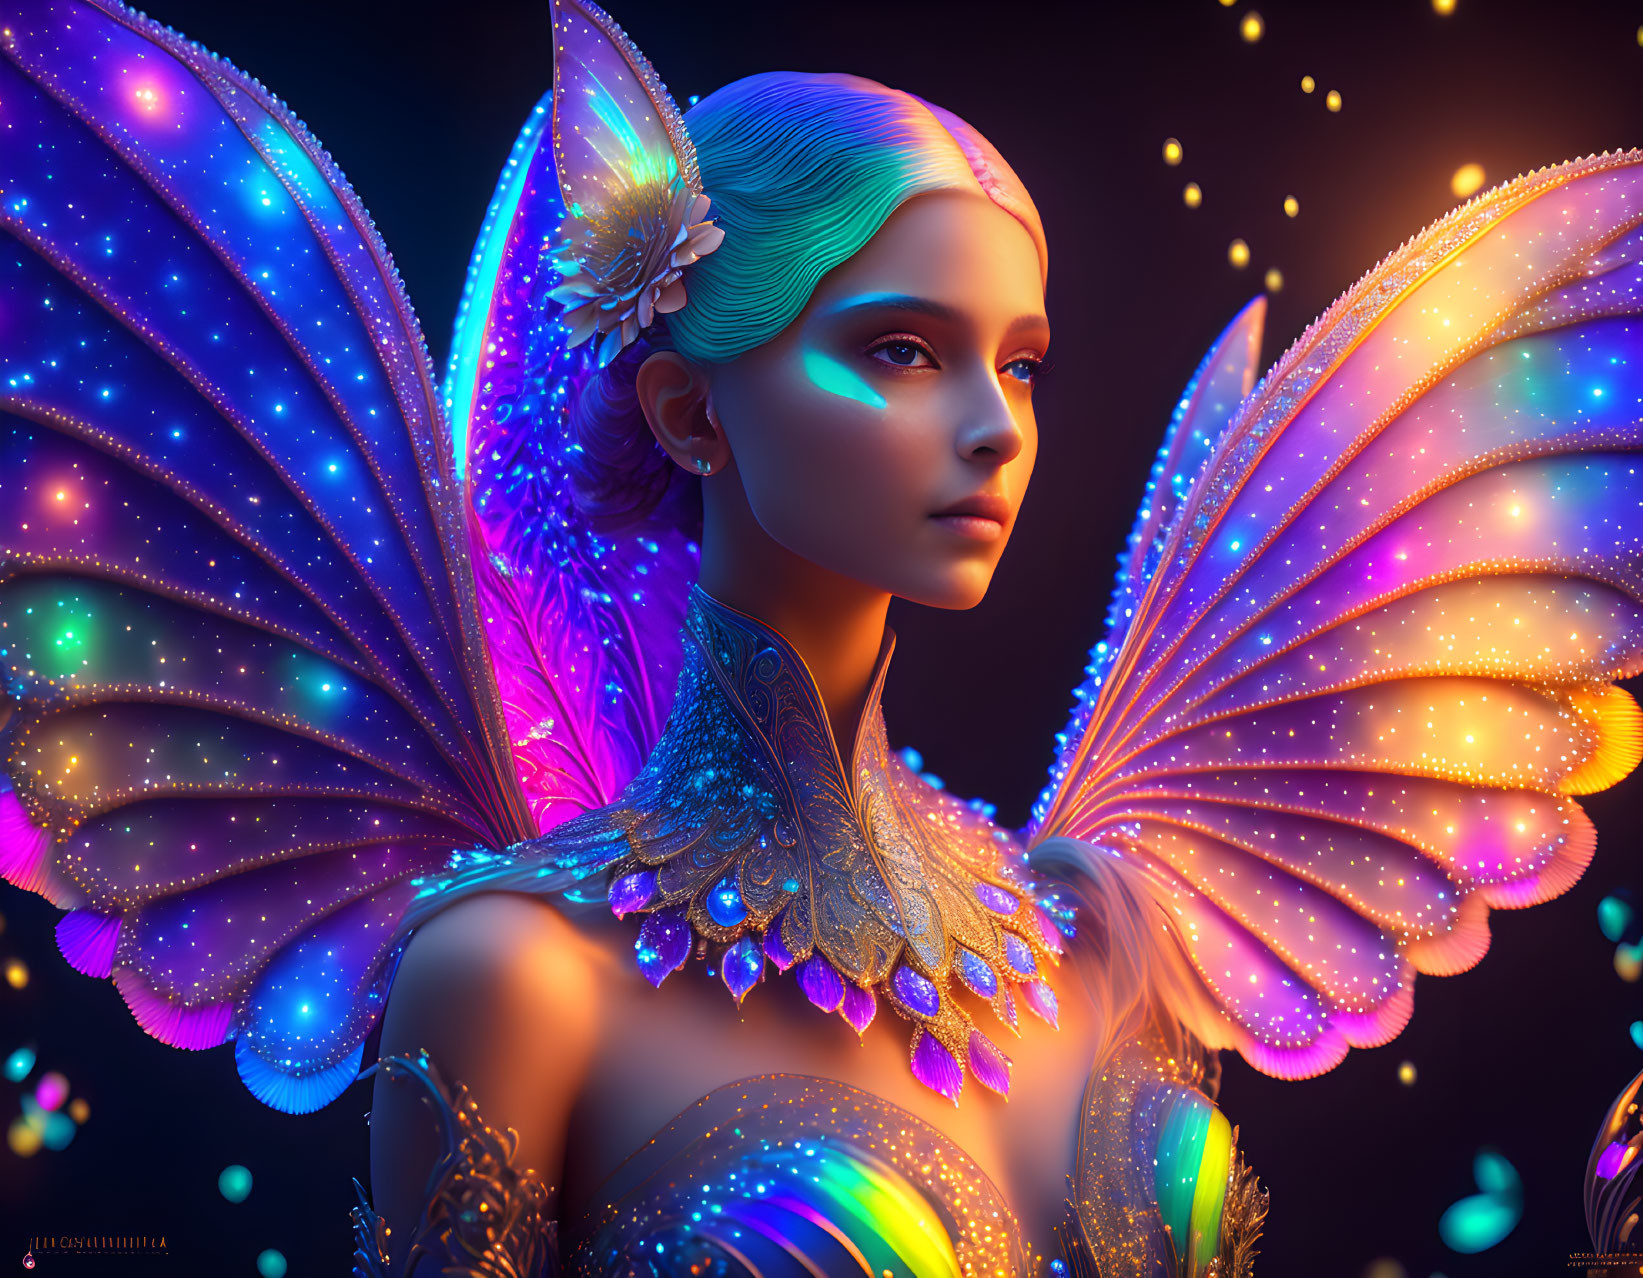 The Fairy Queen 